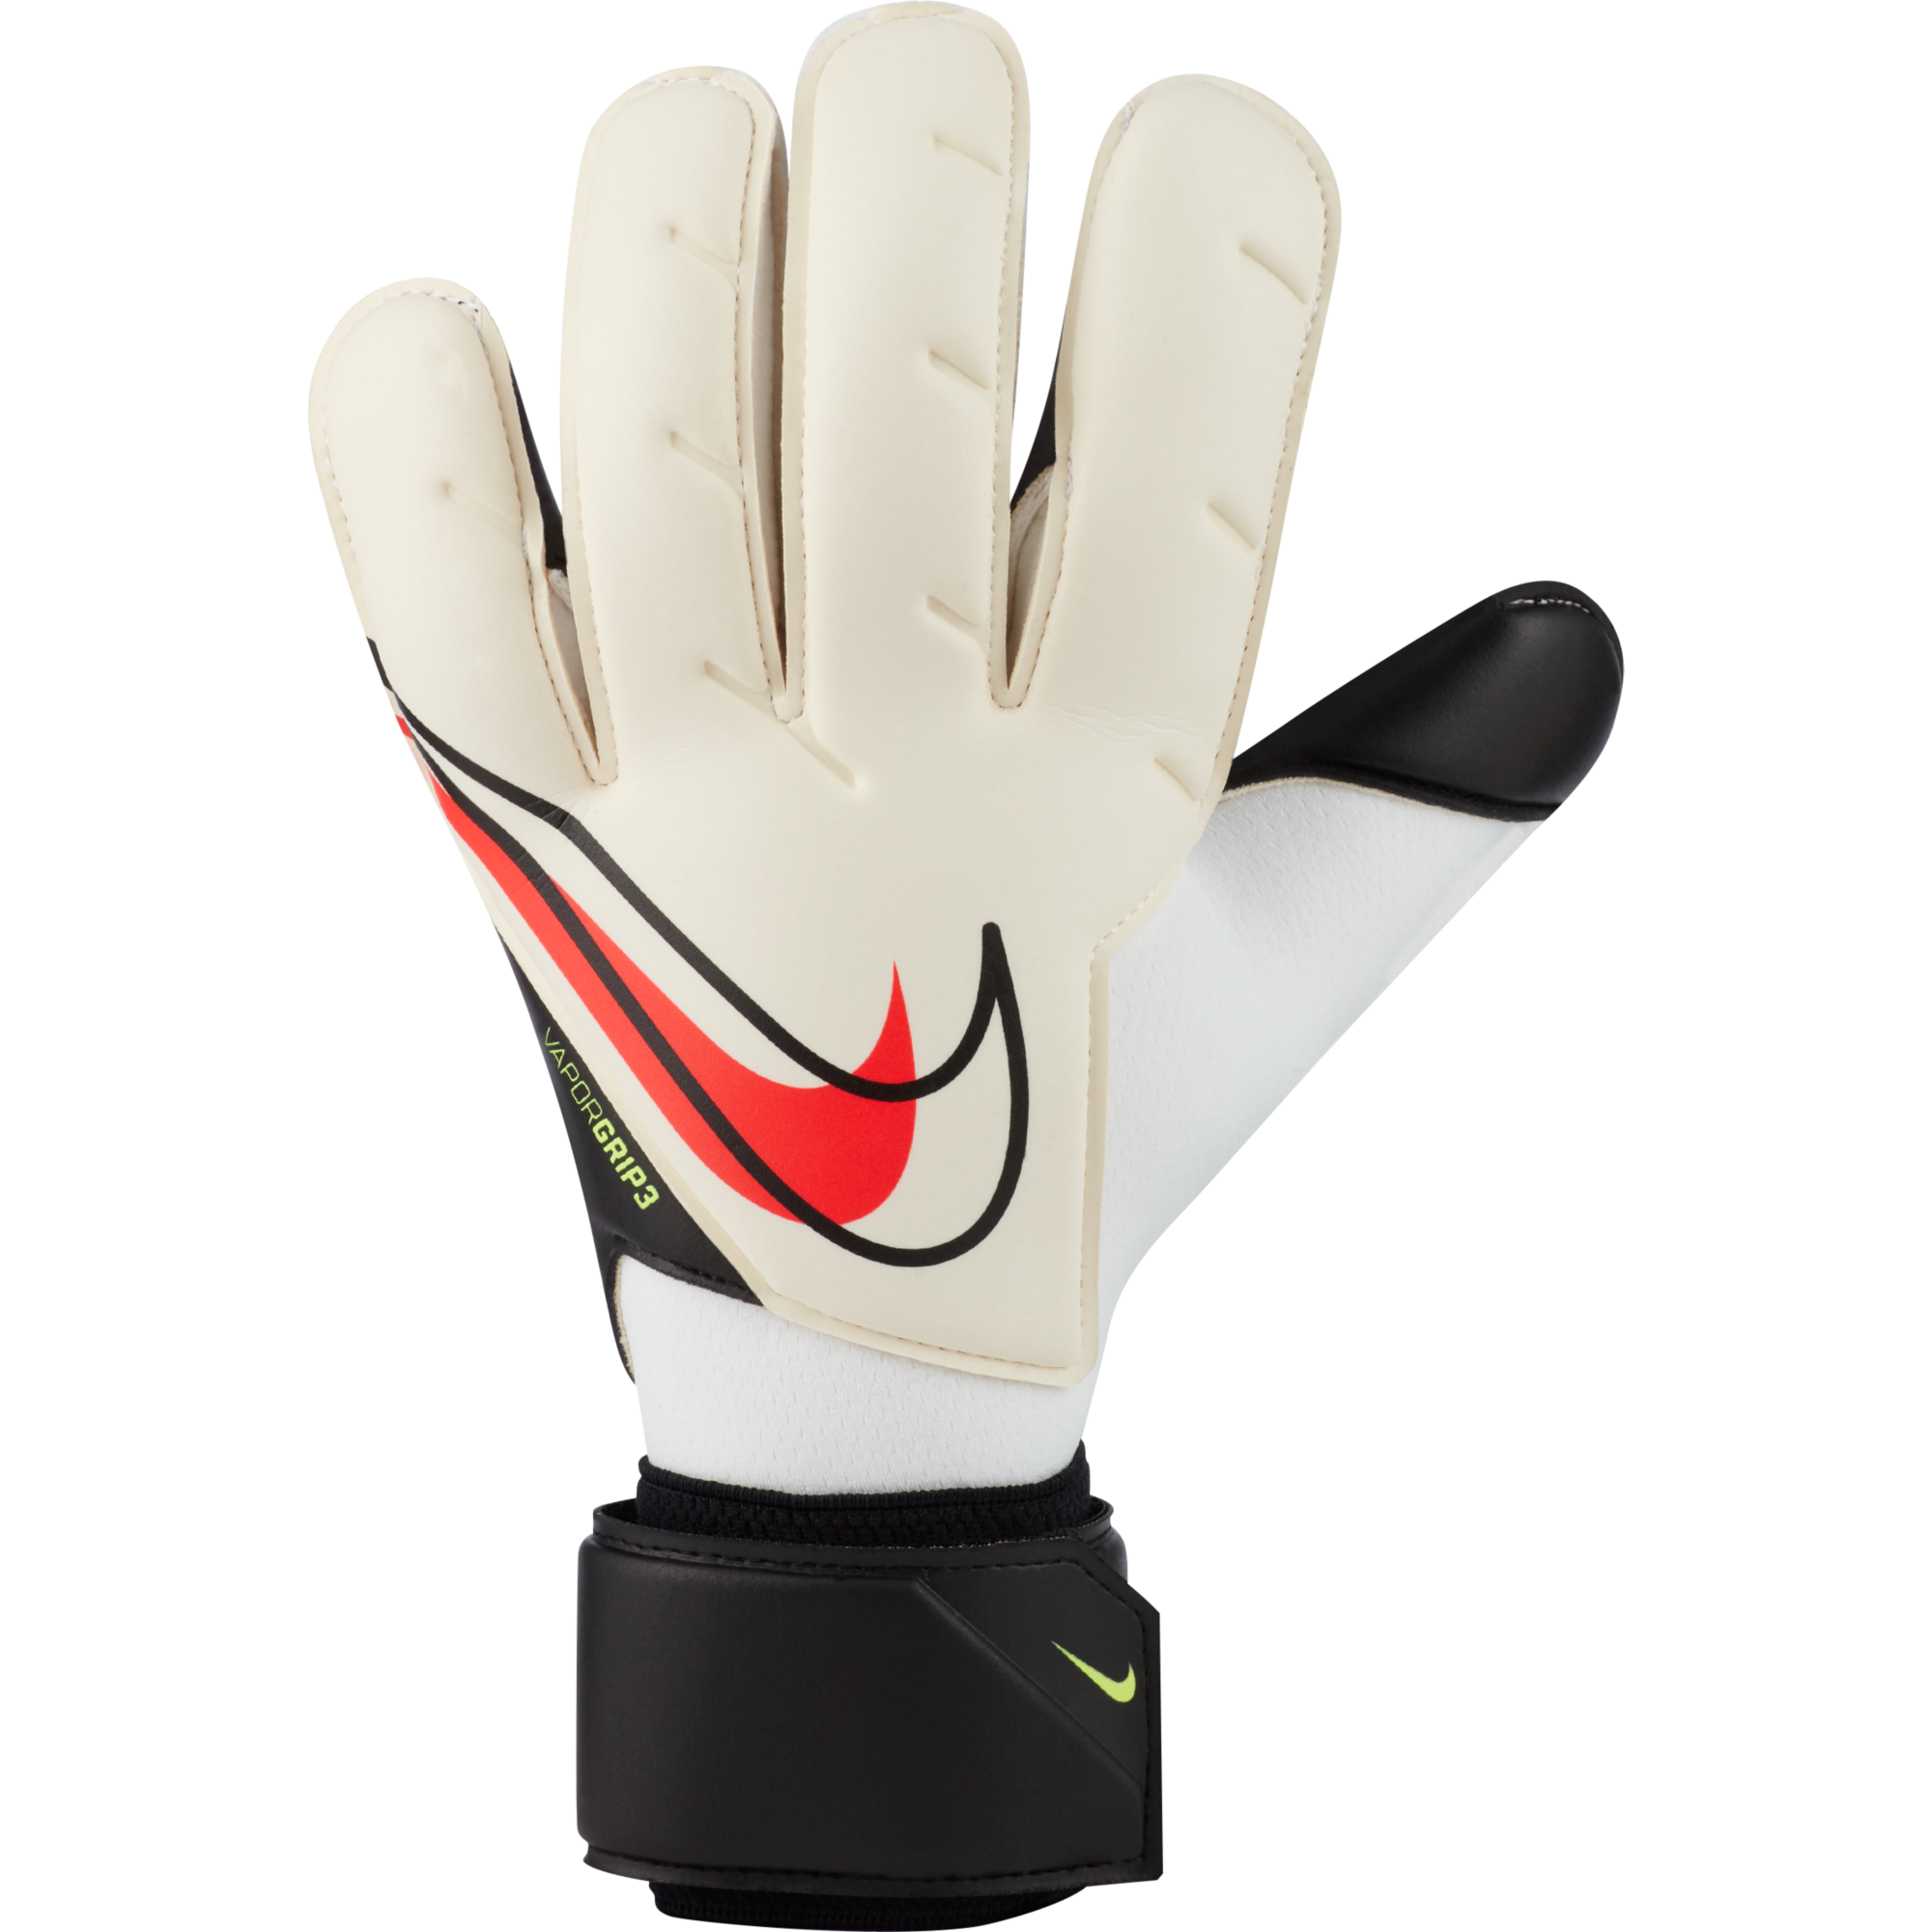 Vapor Grip 3 Goalkeeper Gloves - White / Black / Bright Crimson